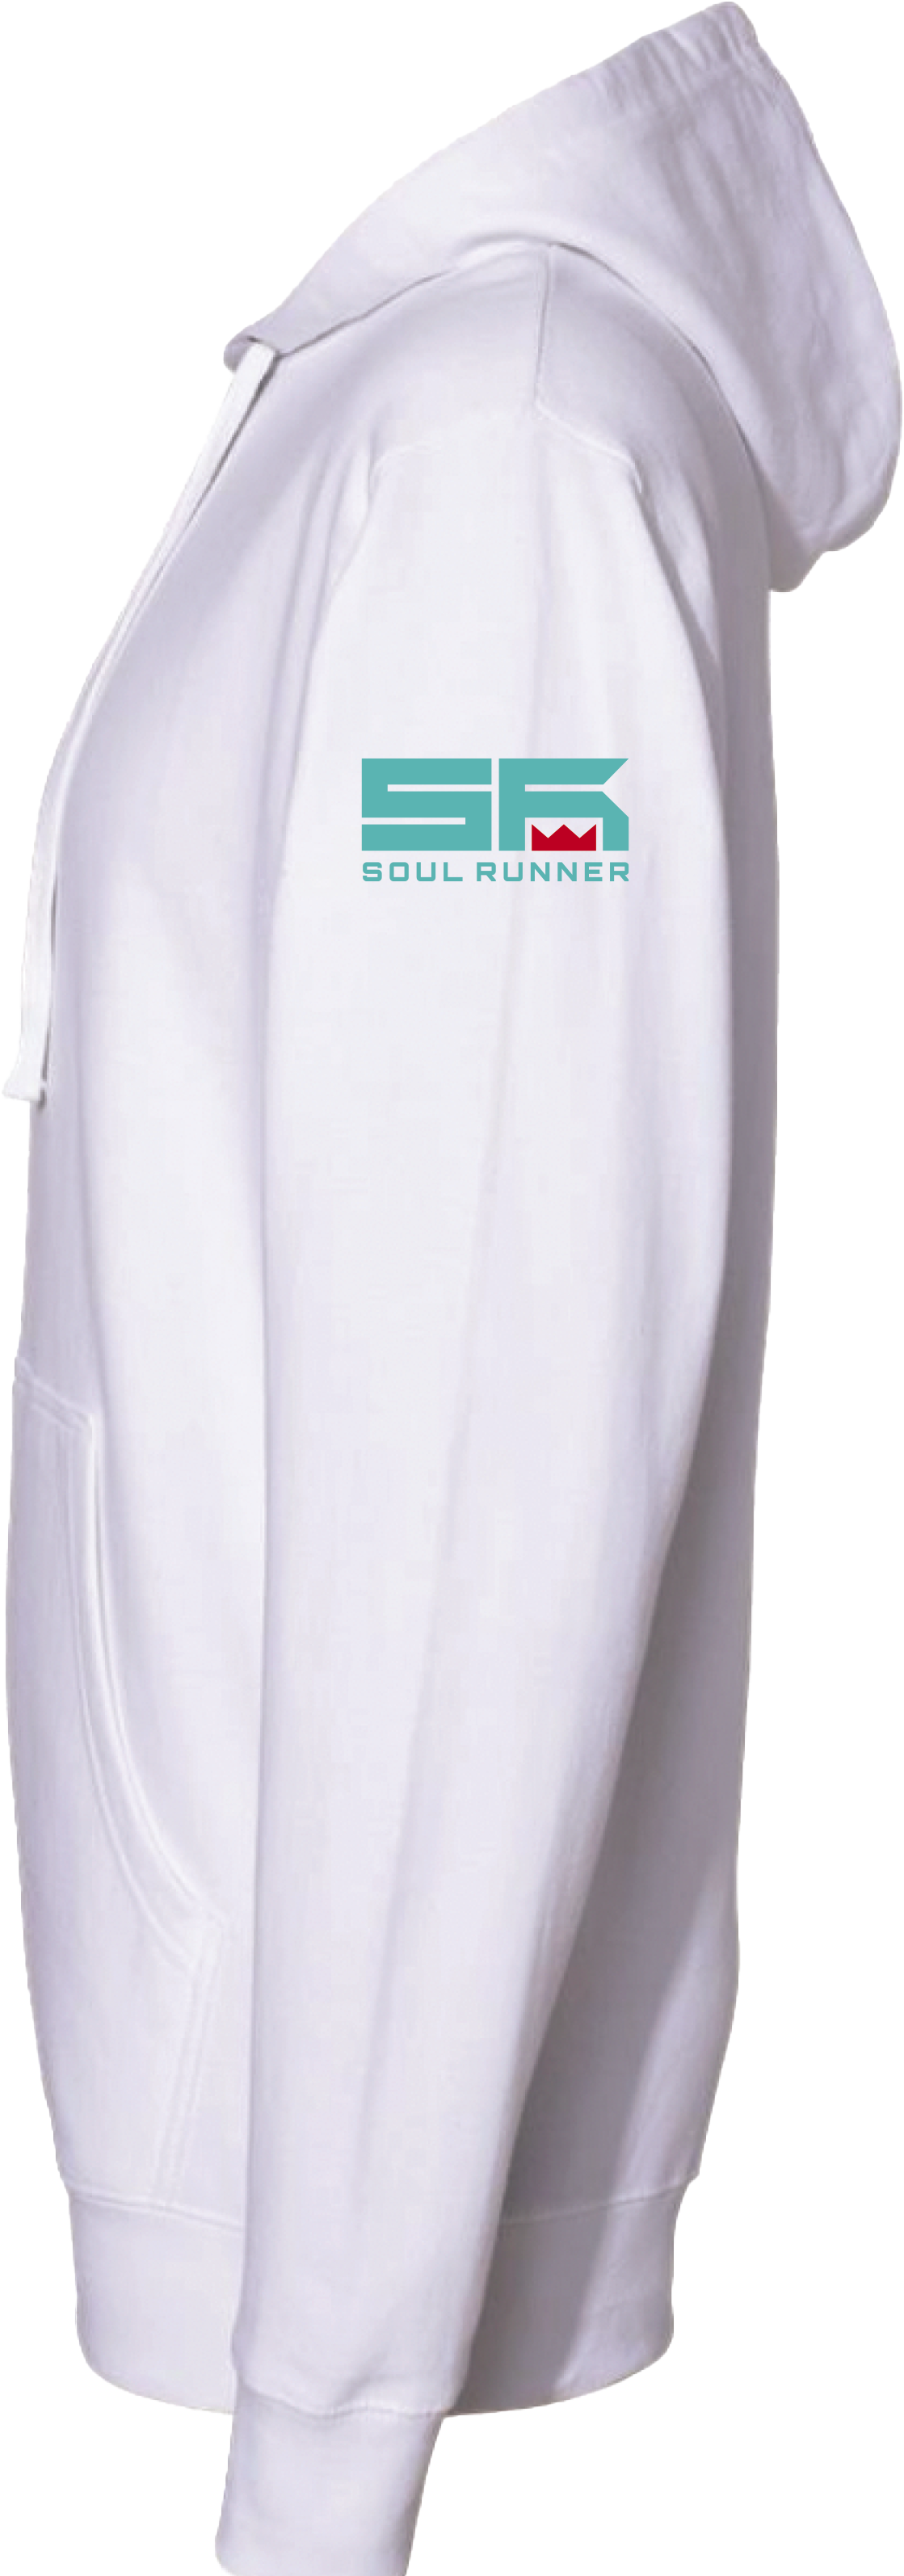 Soul Runner White Graphic Logo Kangaroo Pocket Cotton Hoodie Adult Size XL